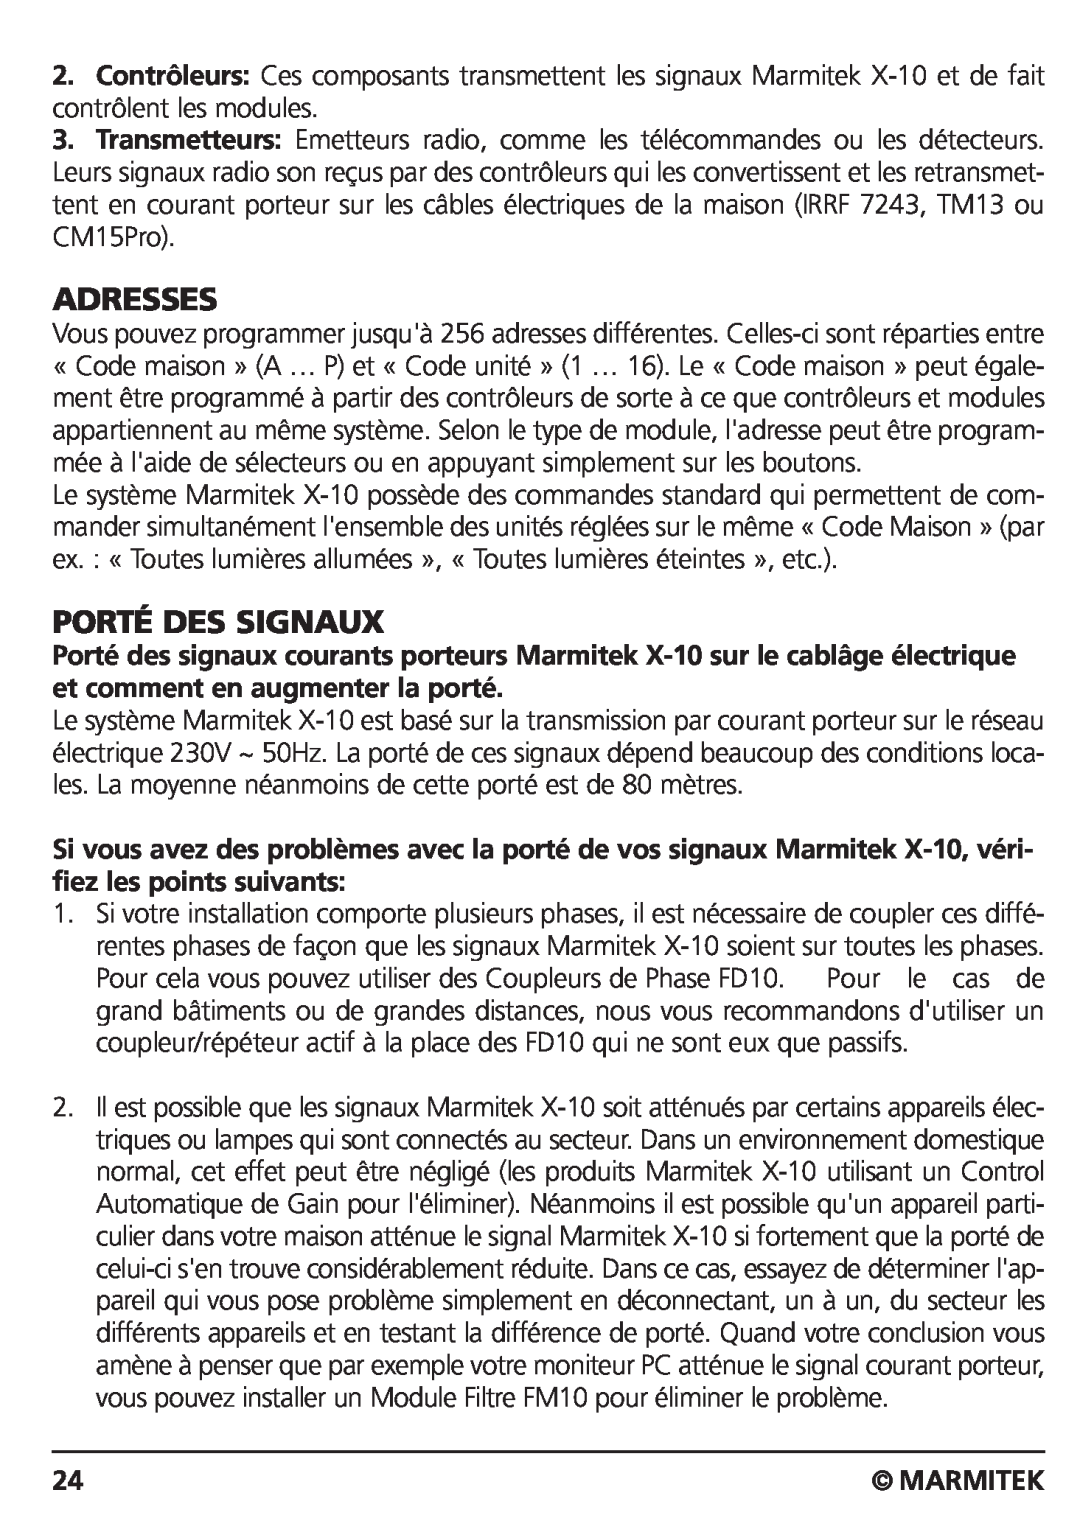 Marmitek CM15PRO manual Porté Des Signaux, Adresses, Marmitek 